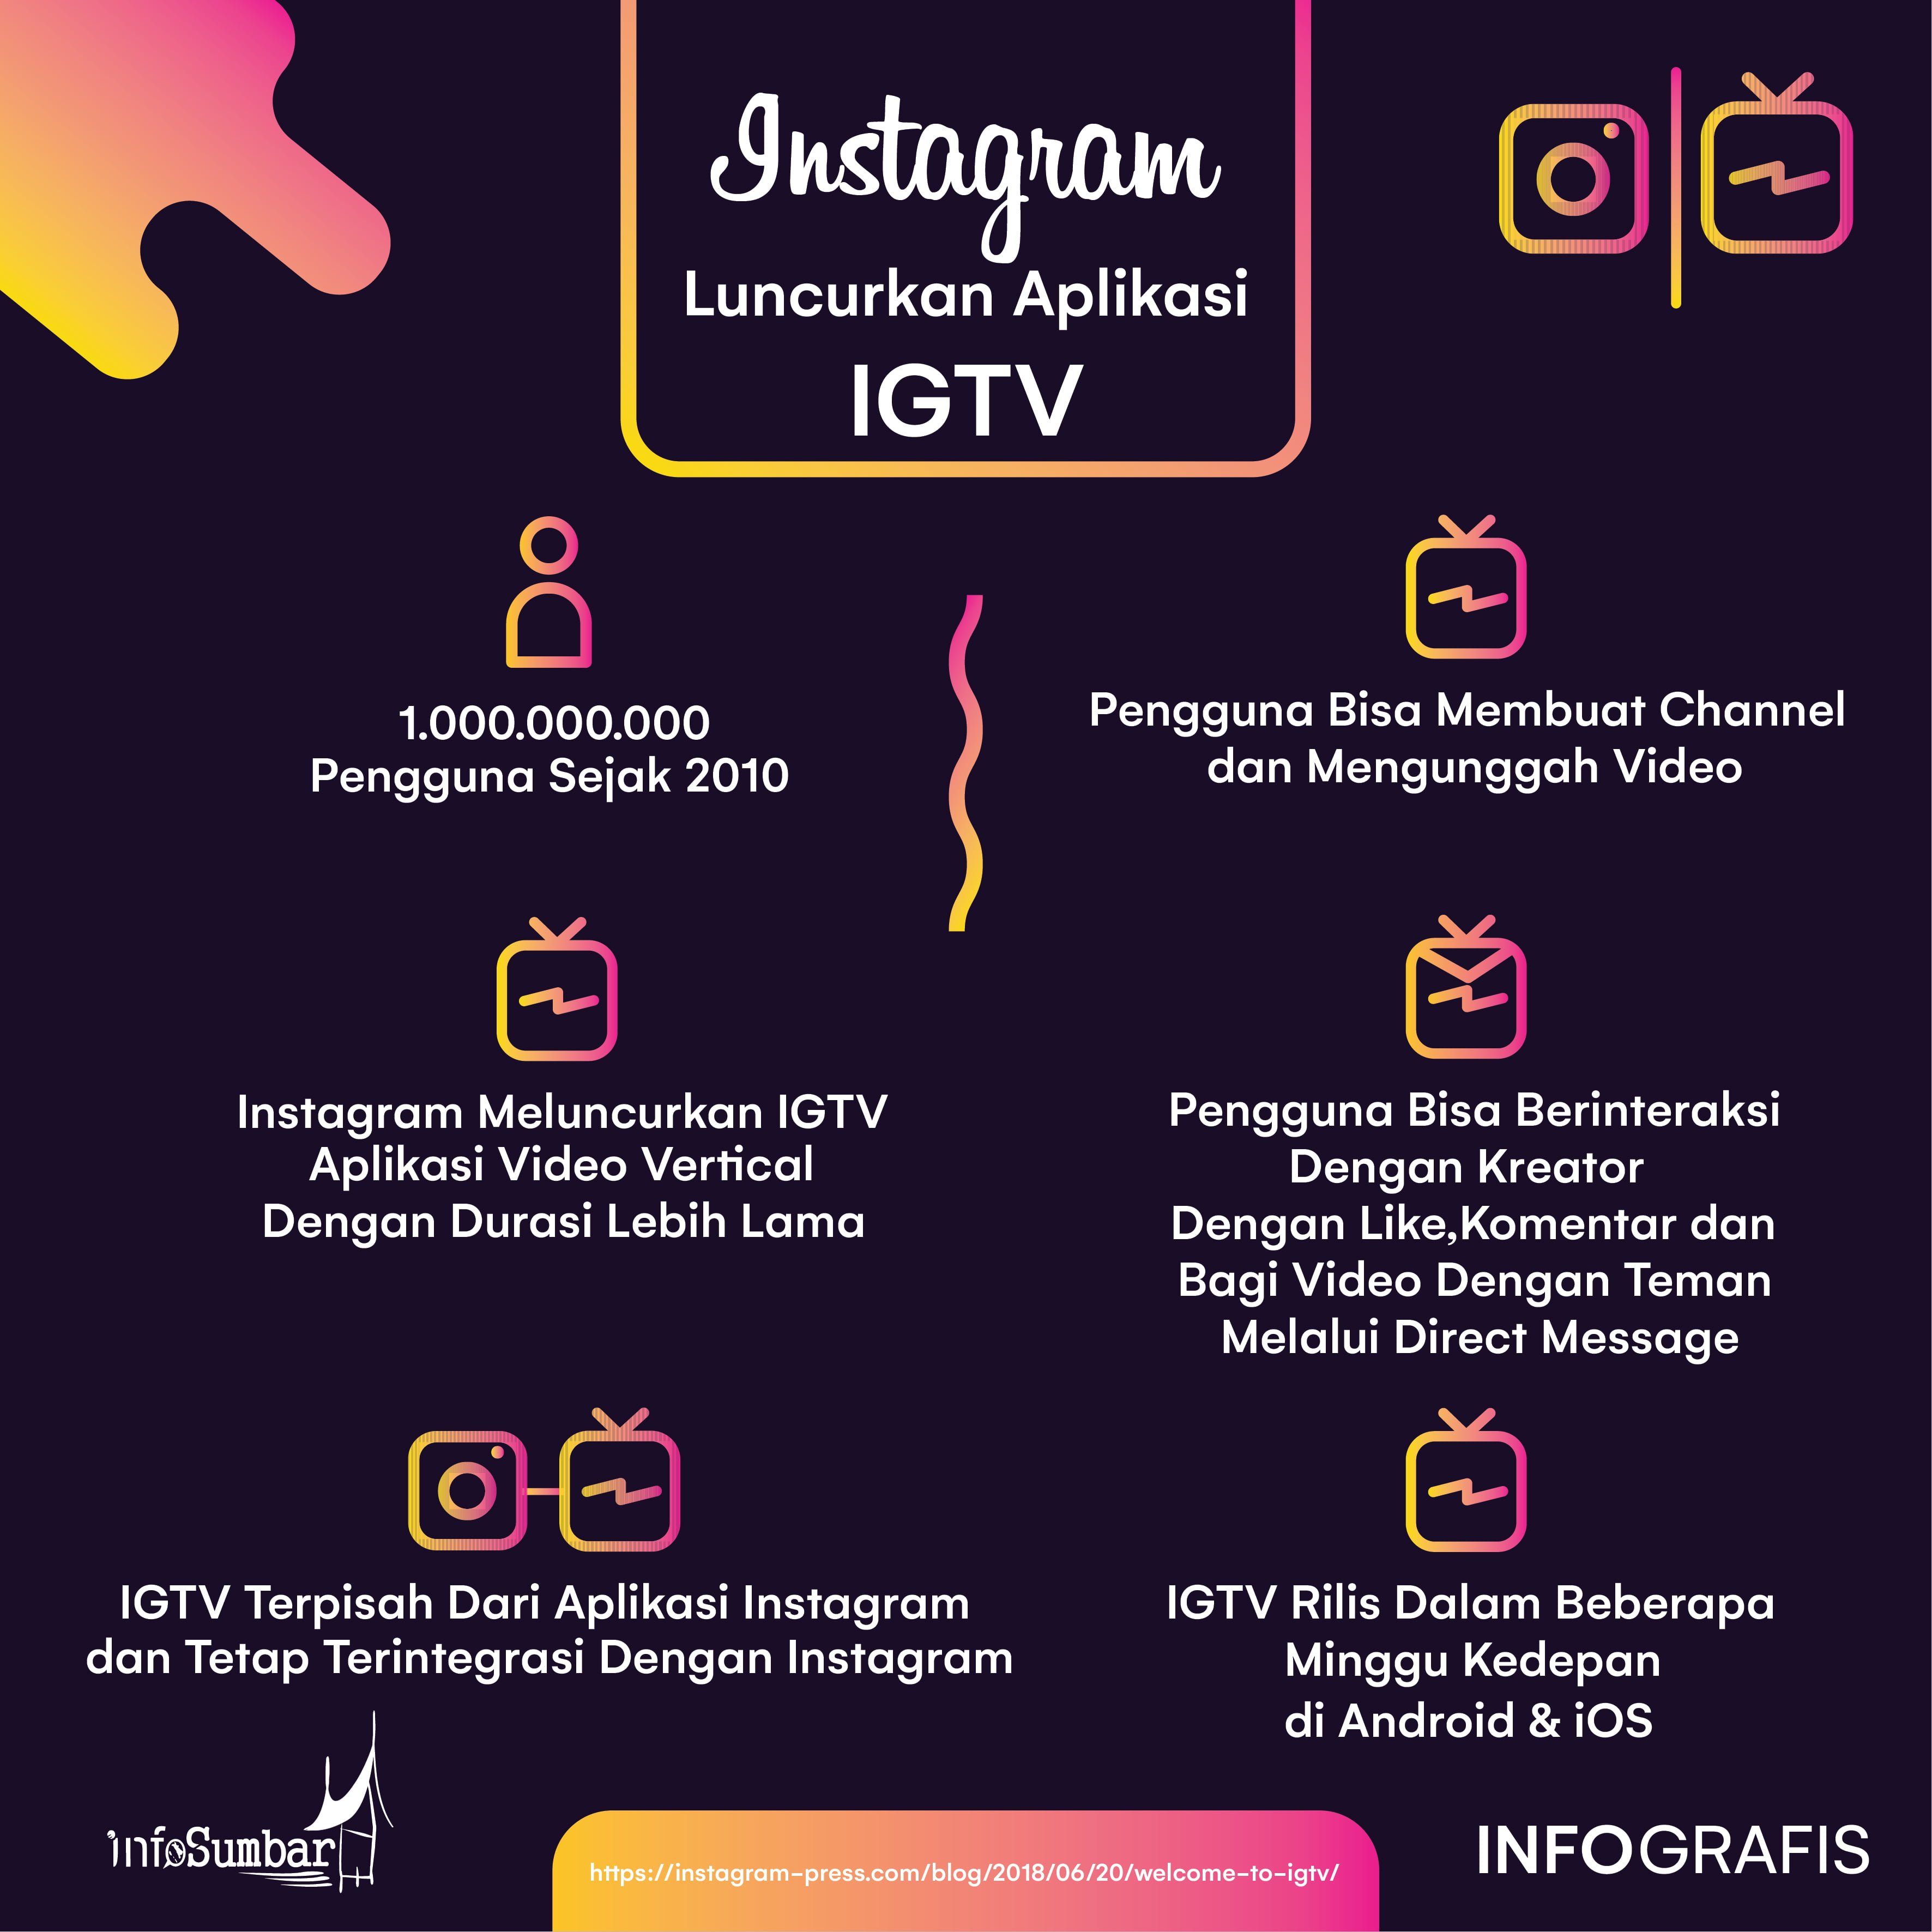 Instagram Rilis Aplikasi IGTV Untuk Para Penggunanya InfoSumbar